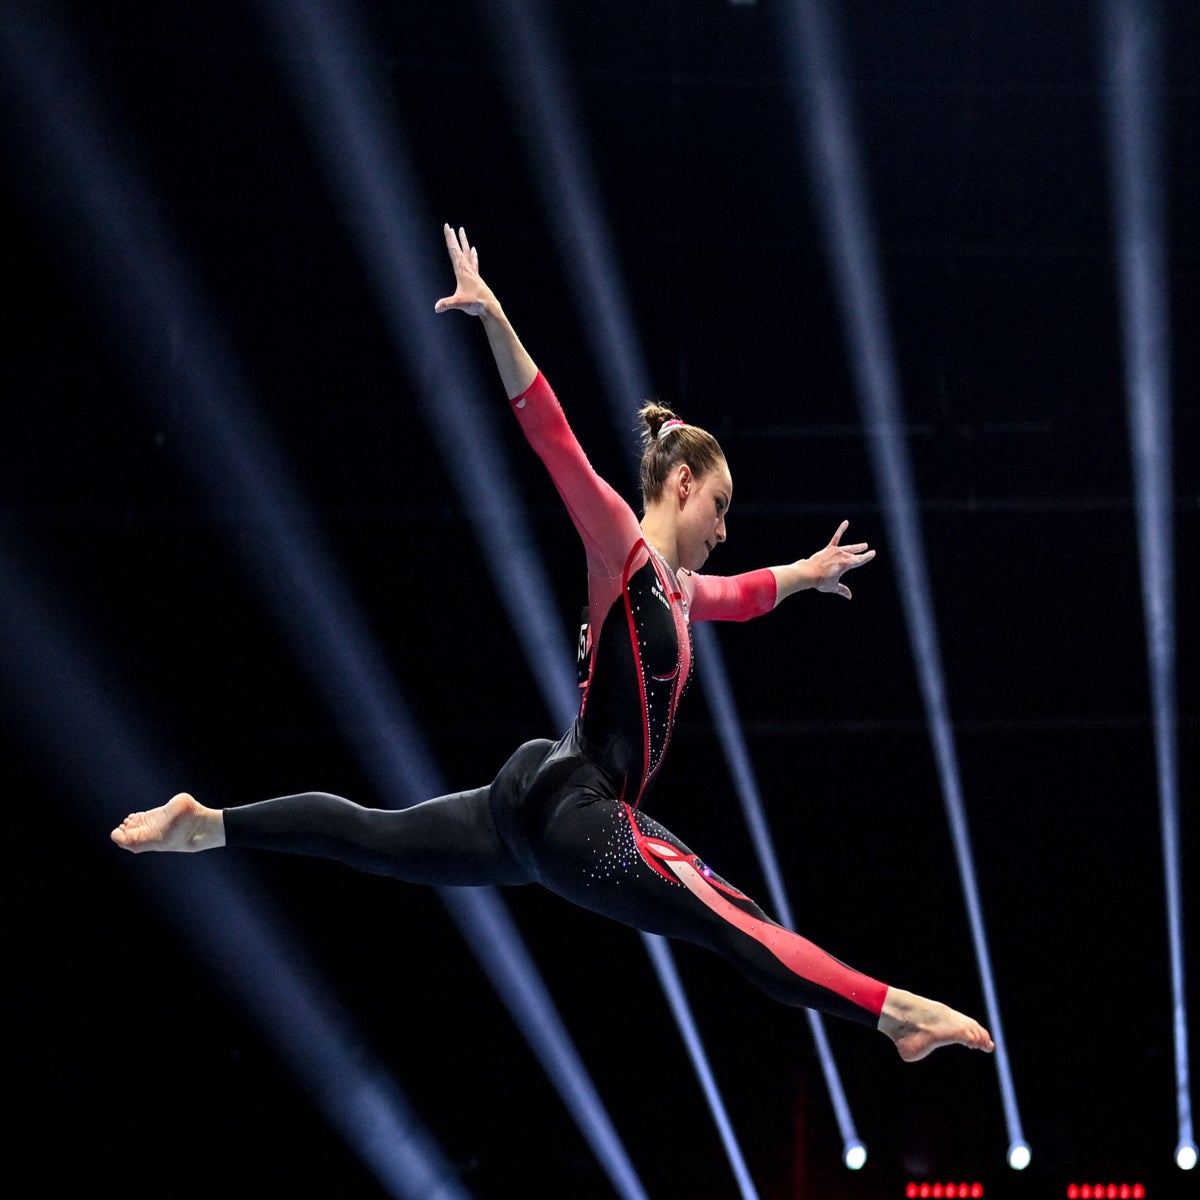 Company offers replicas of $1,200 USA gymnastics leotards